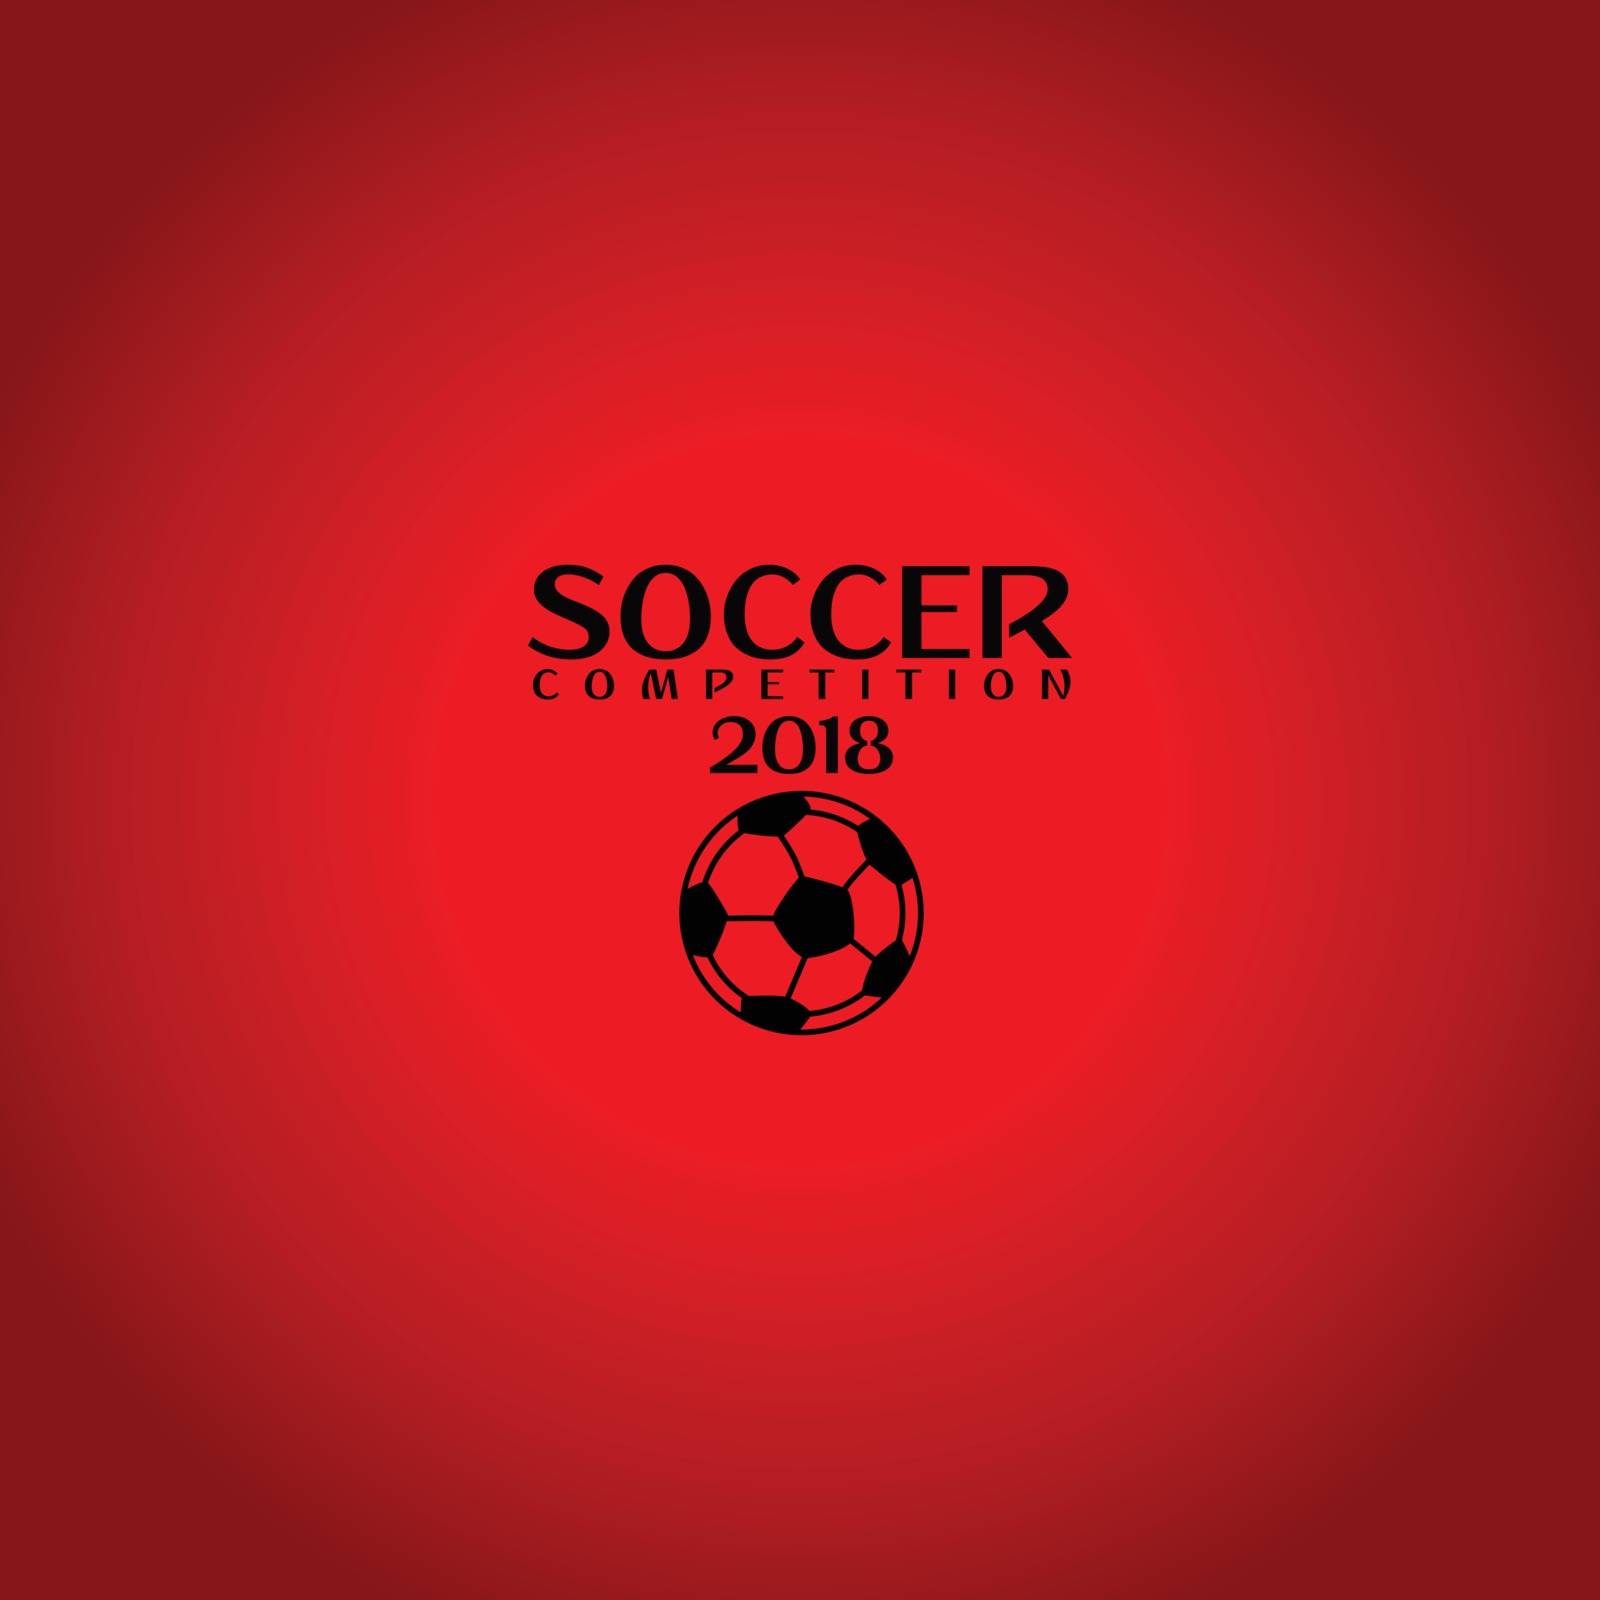 world soccer tournament 2018 theme vector art illustration